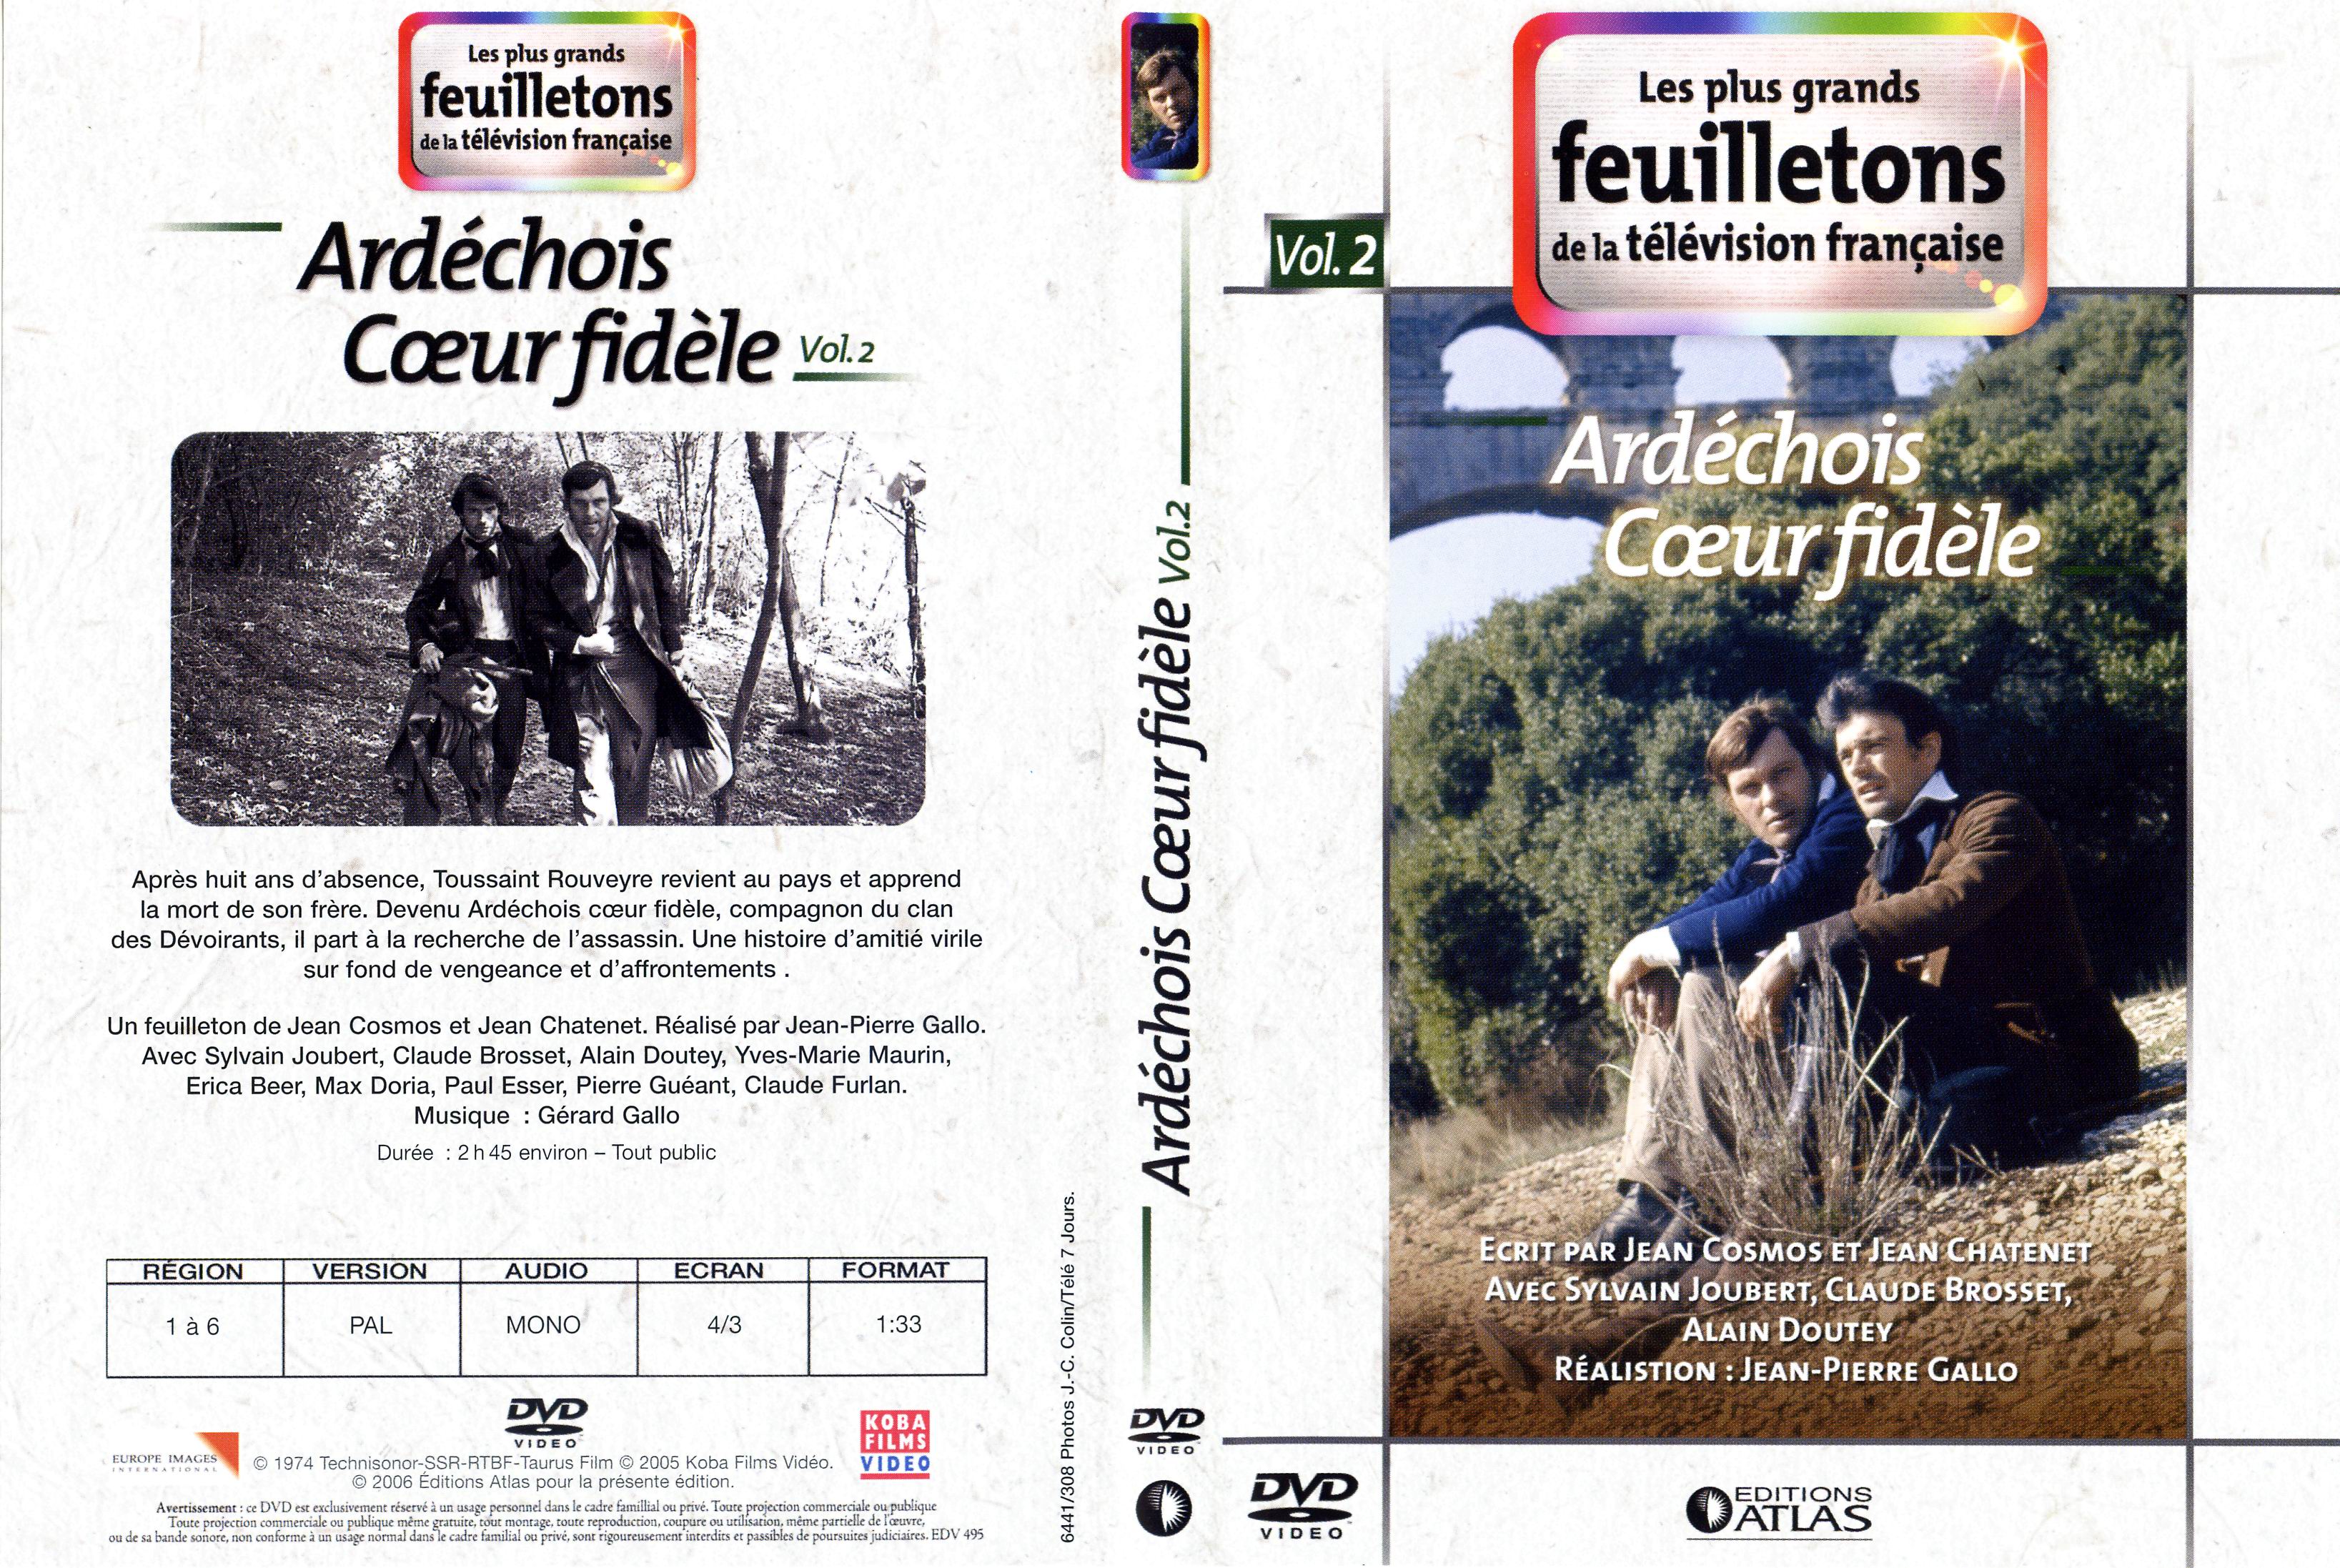 Jaquette DVD Ardchois coeur fidle vol 2